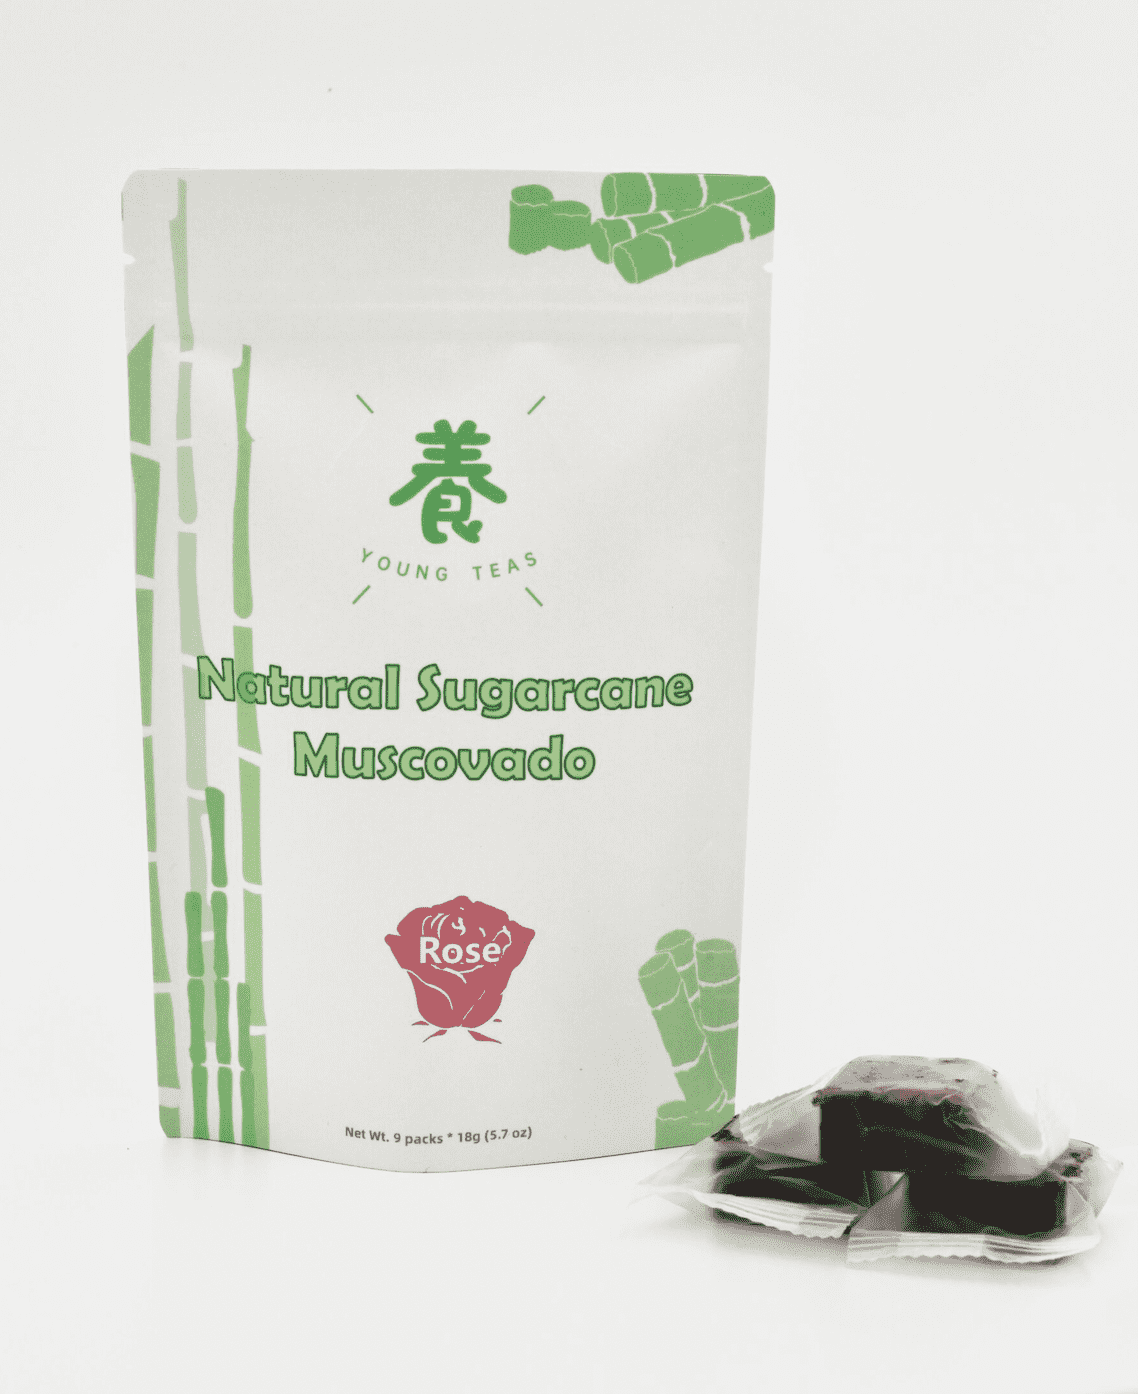 Rose Sugarcane Muscovado – Young Teas